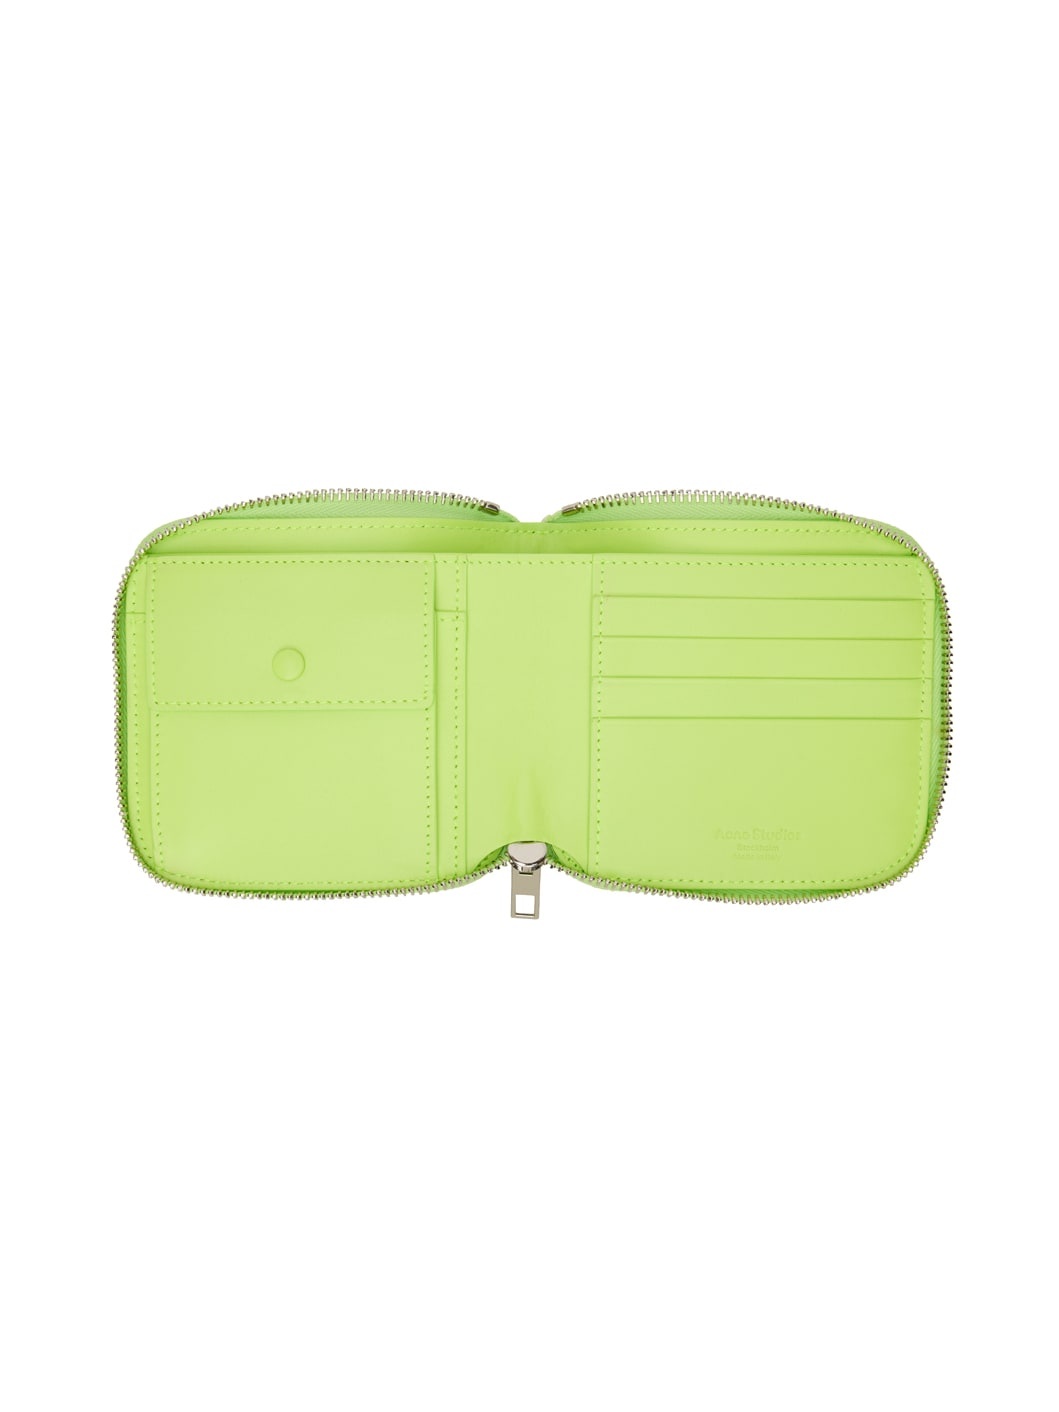 Green Zip Wallet - 3